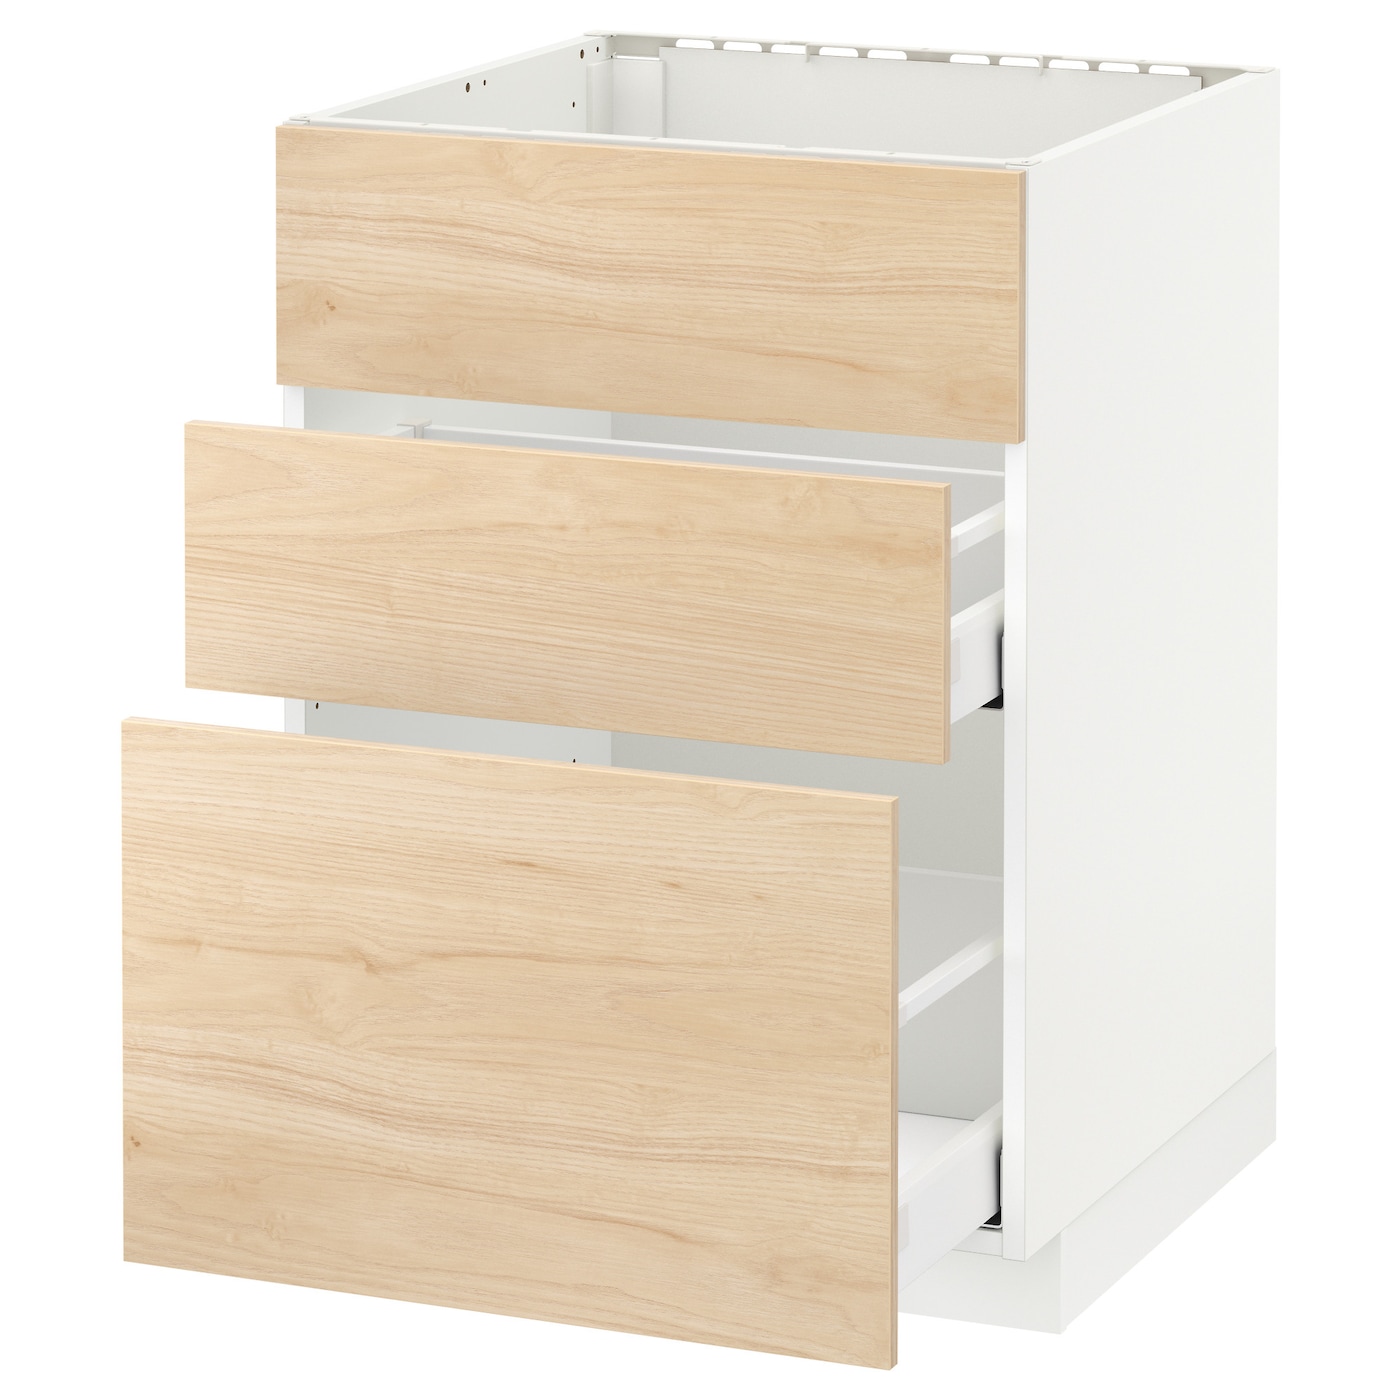 Напольный кухонный шкаф  - IKEA METOD MAXIMERA, 88x61,6x60см, белый/светло-коричневый, МЕТОД МАКСИМЕРА ИКЕА